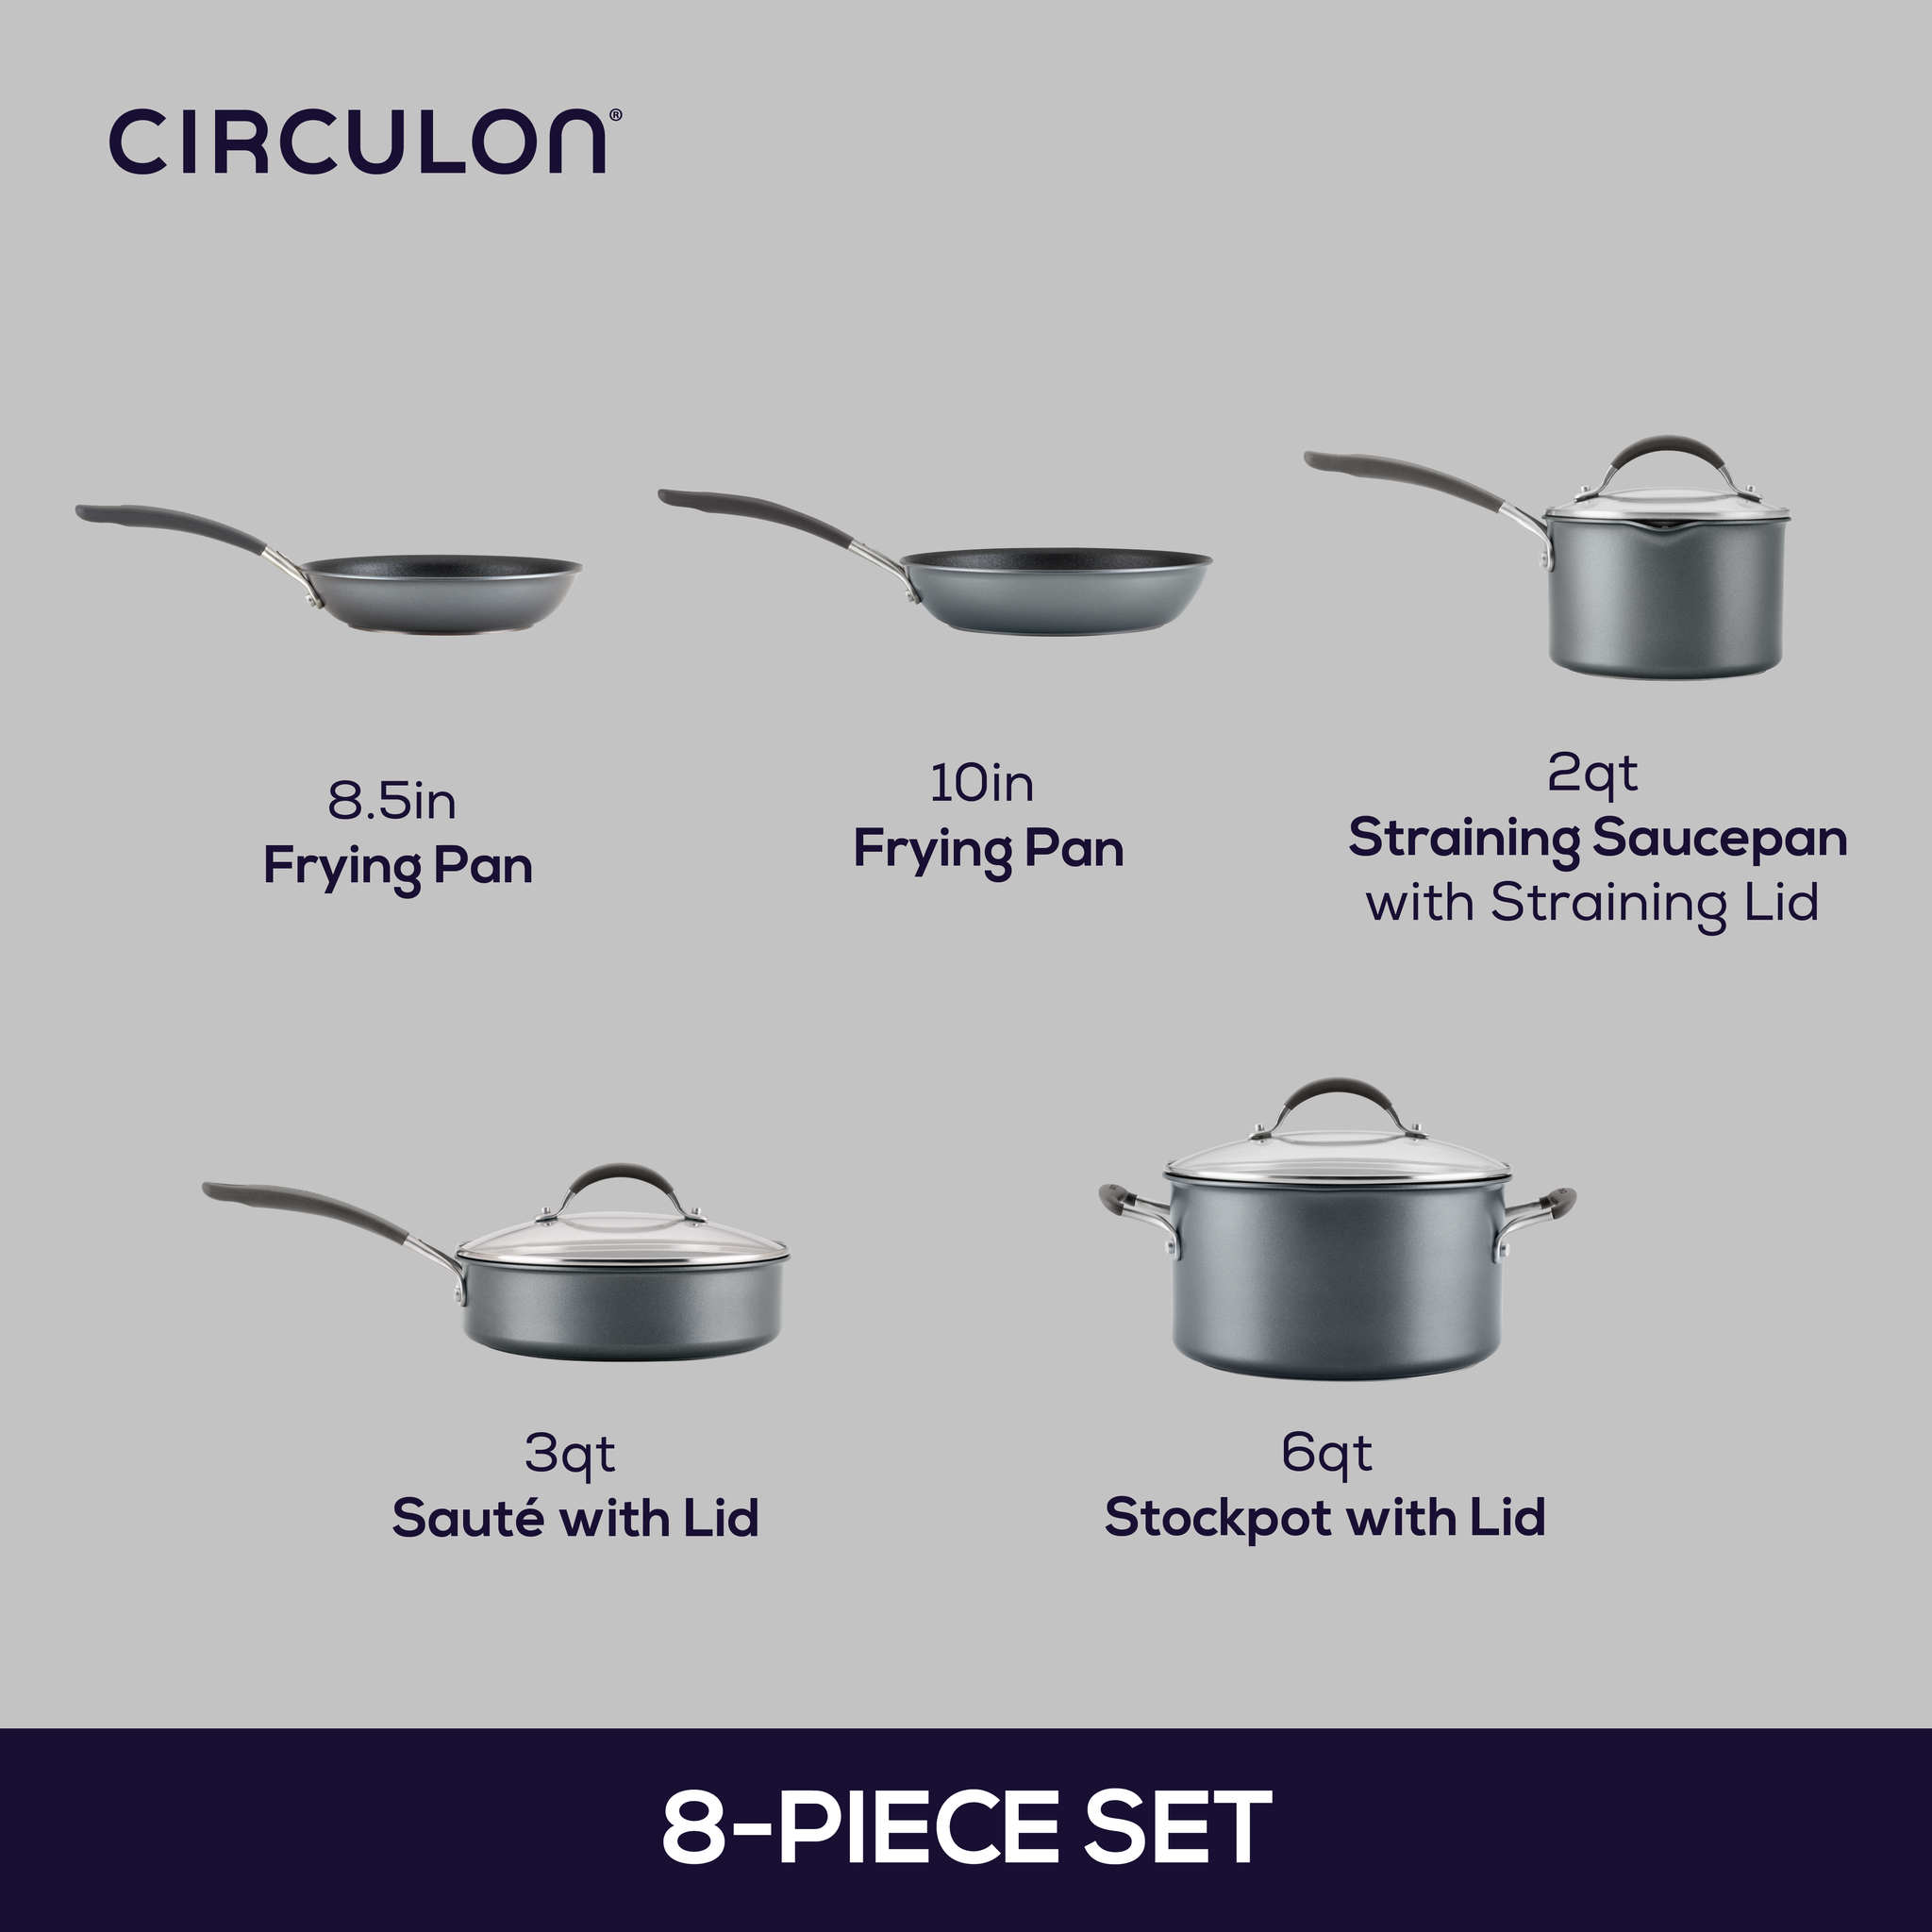 8-Piece ScratchDefense Nonstick Cookware Set